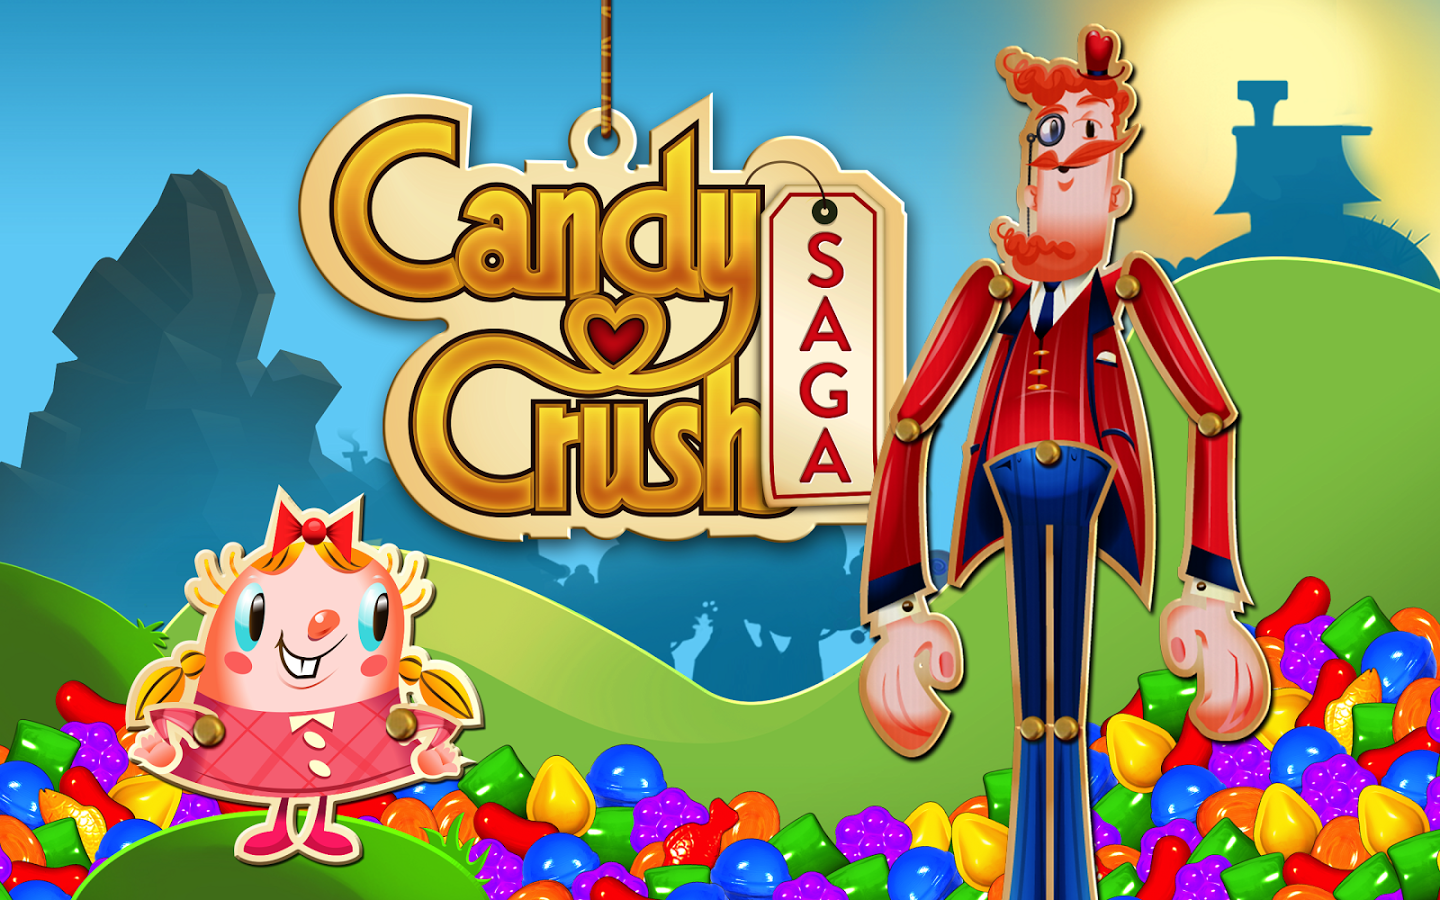 Candy Crush Saga 2